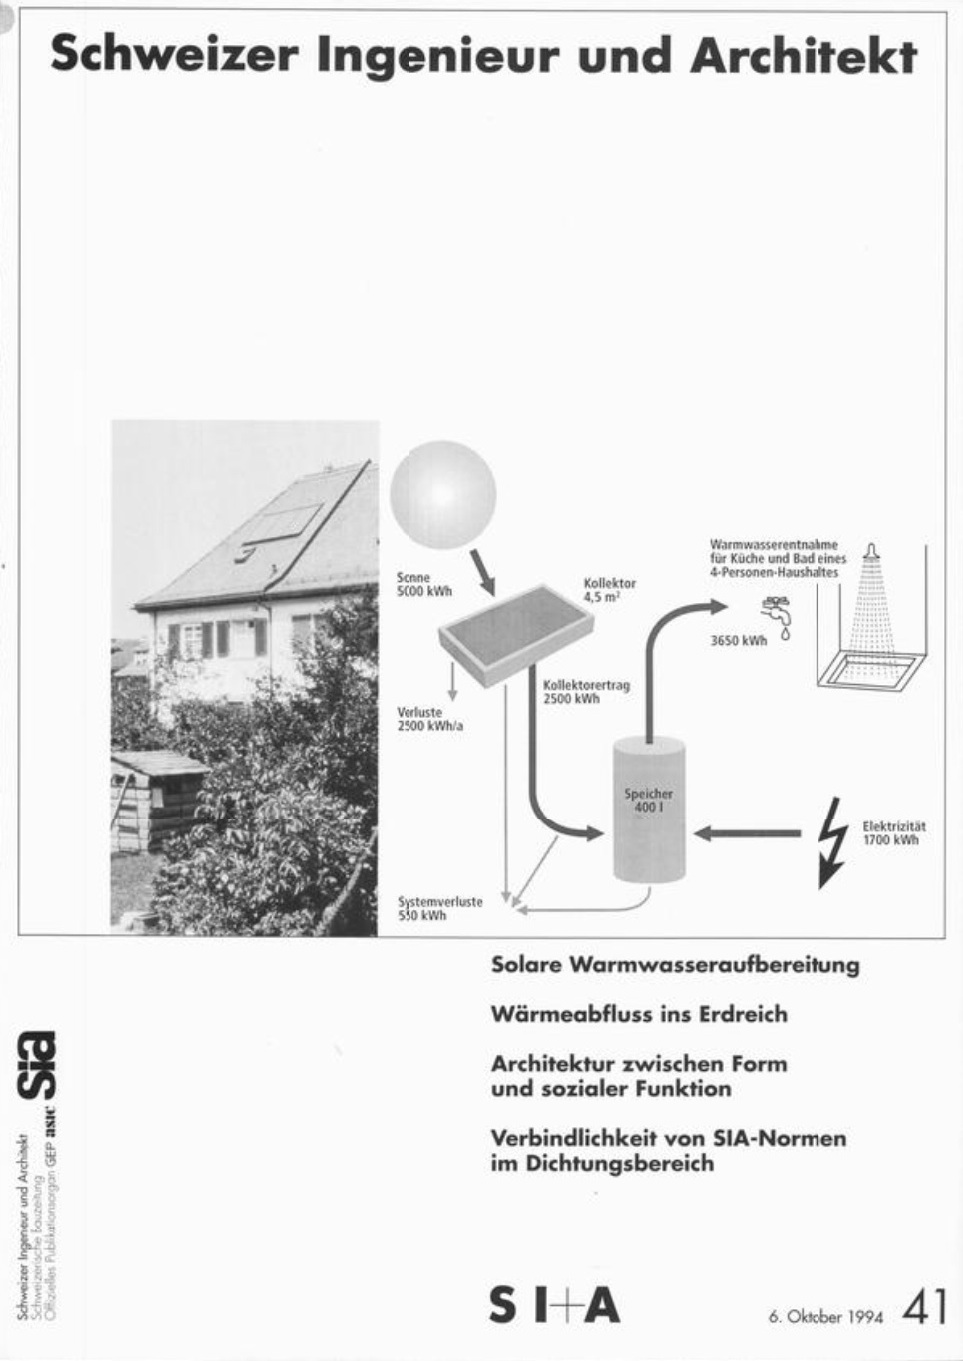 Schweizer Ingenieur und Architekt, Bild: Heft 41/1994.